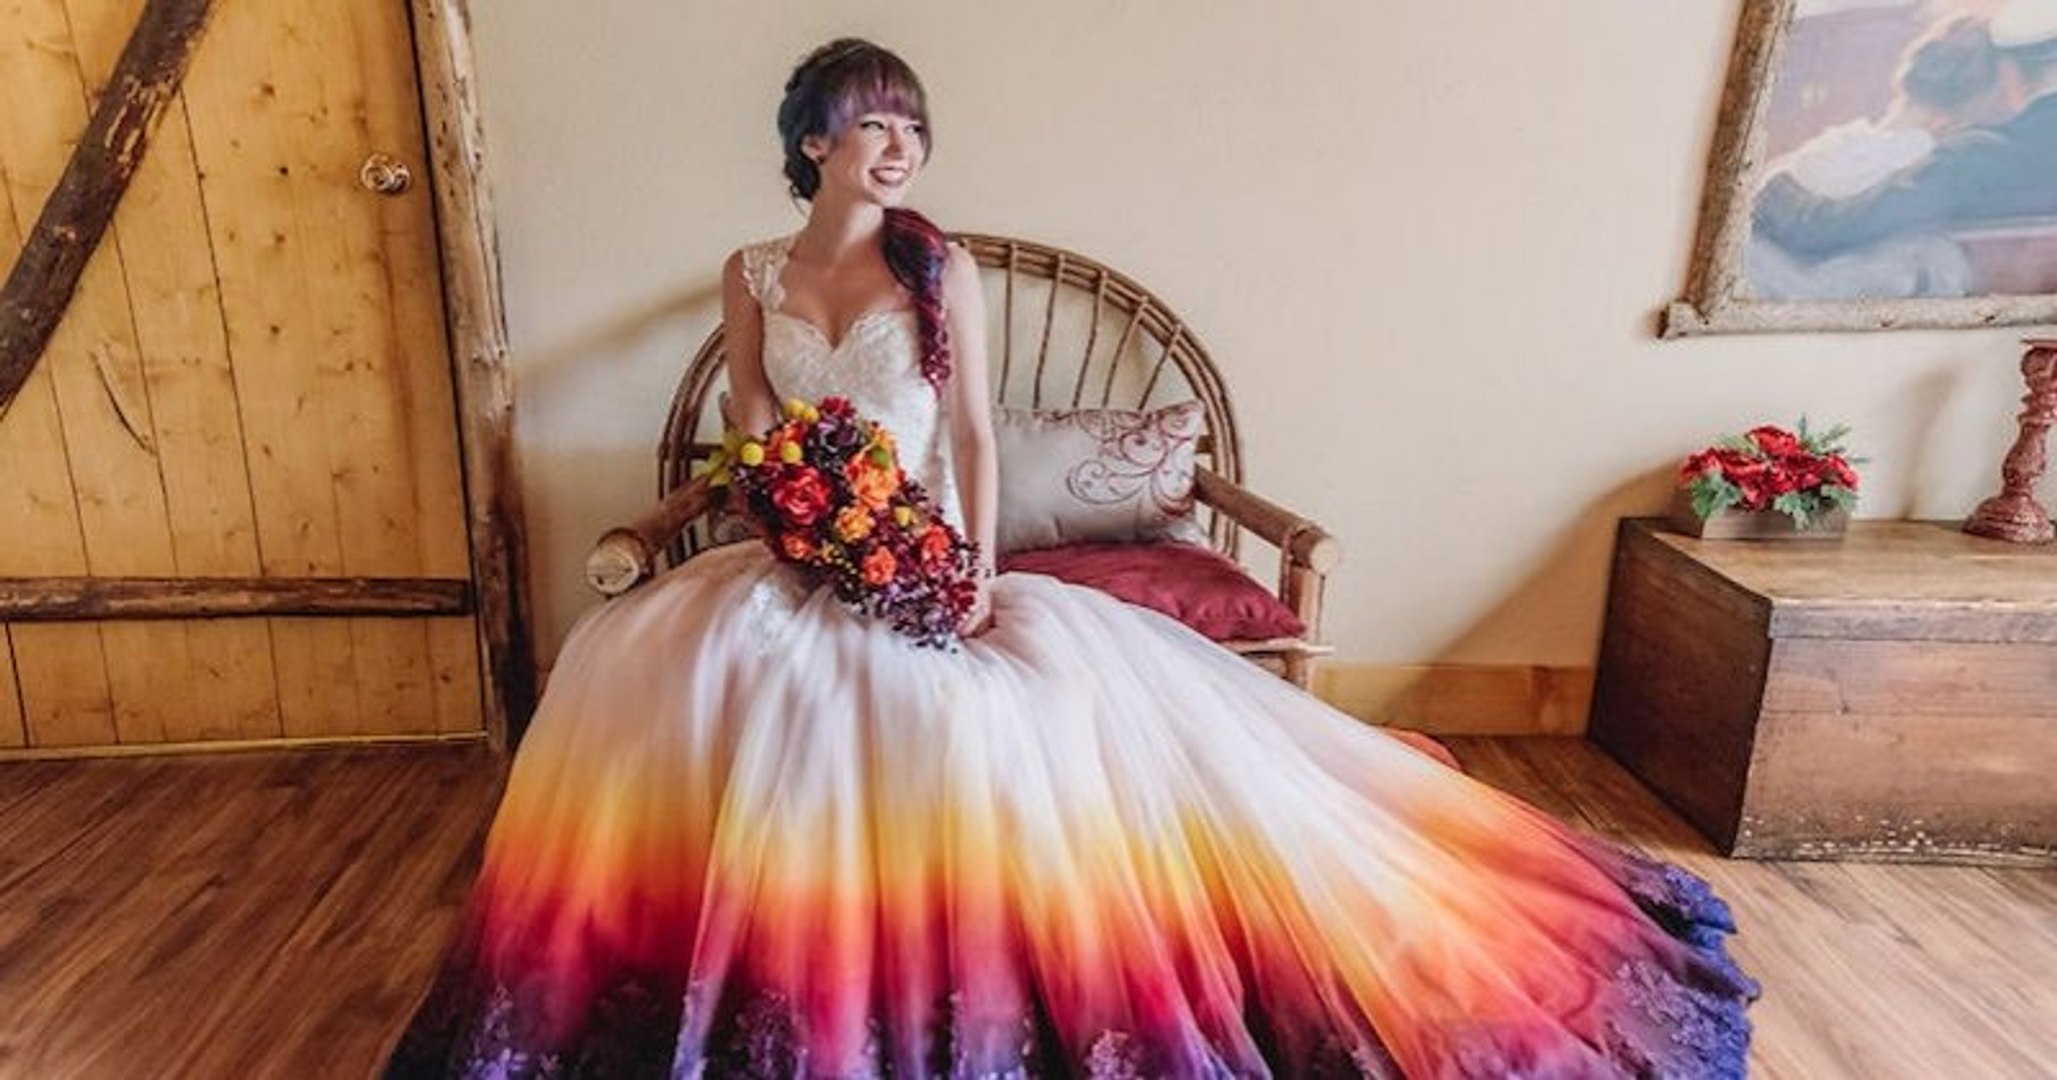 Aux États-Unis, une artiste a lancé son entreprise de robes de mariée  multicolores - Vidéo Dailymotion